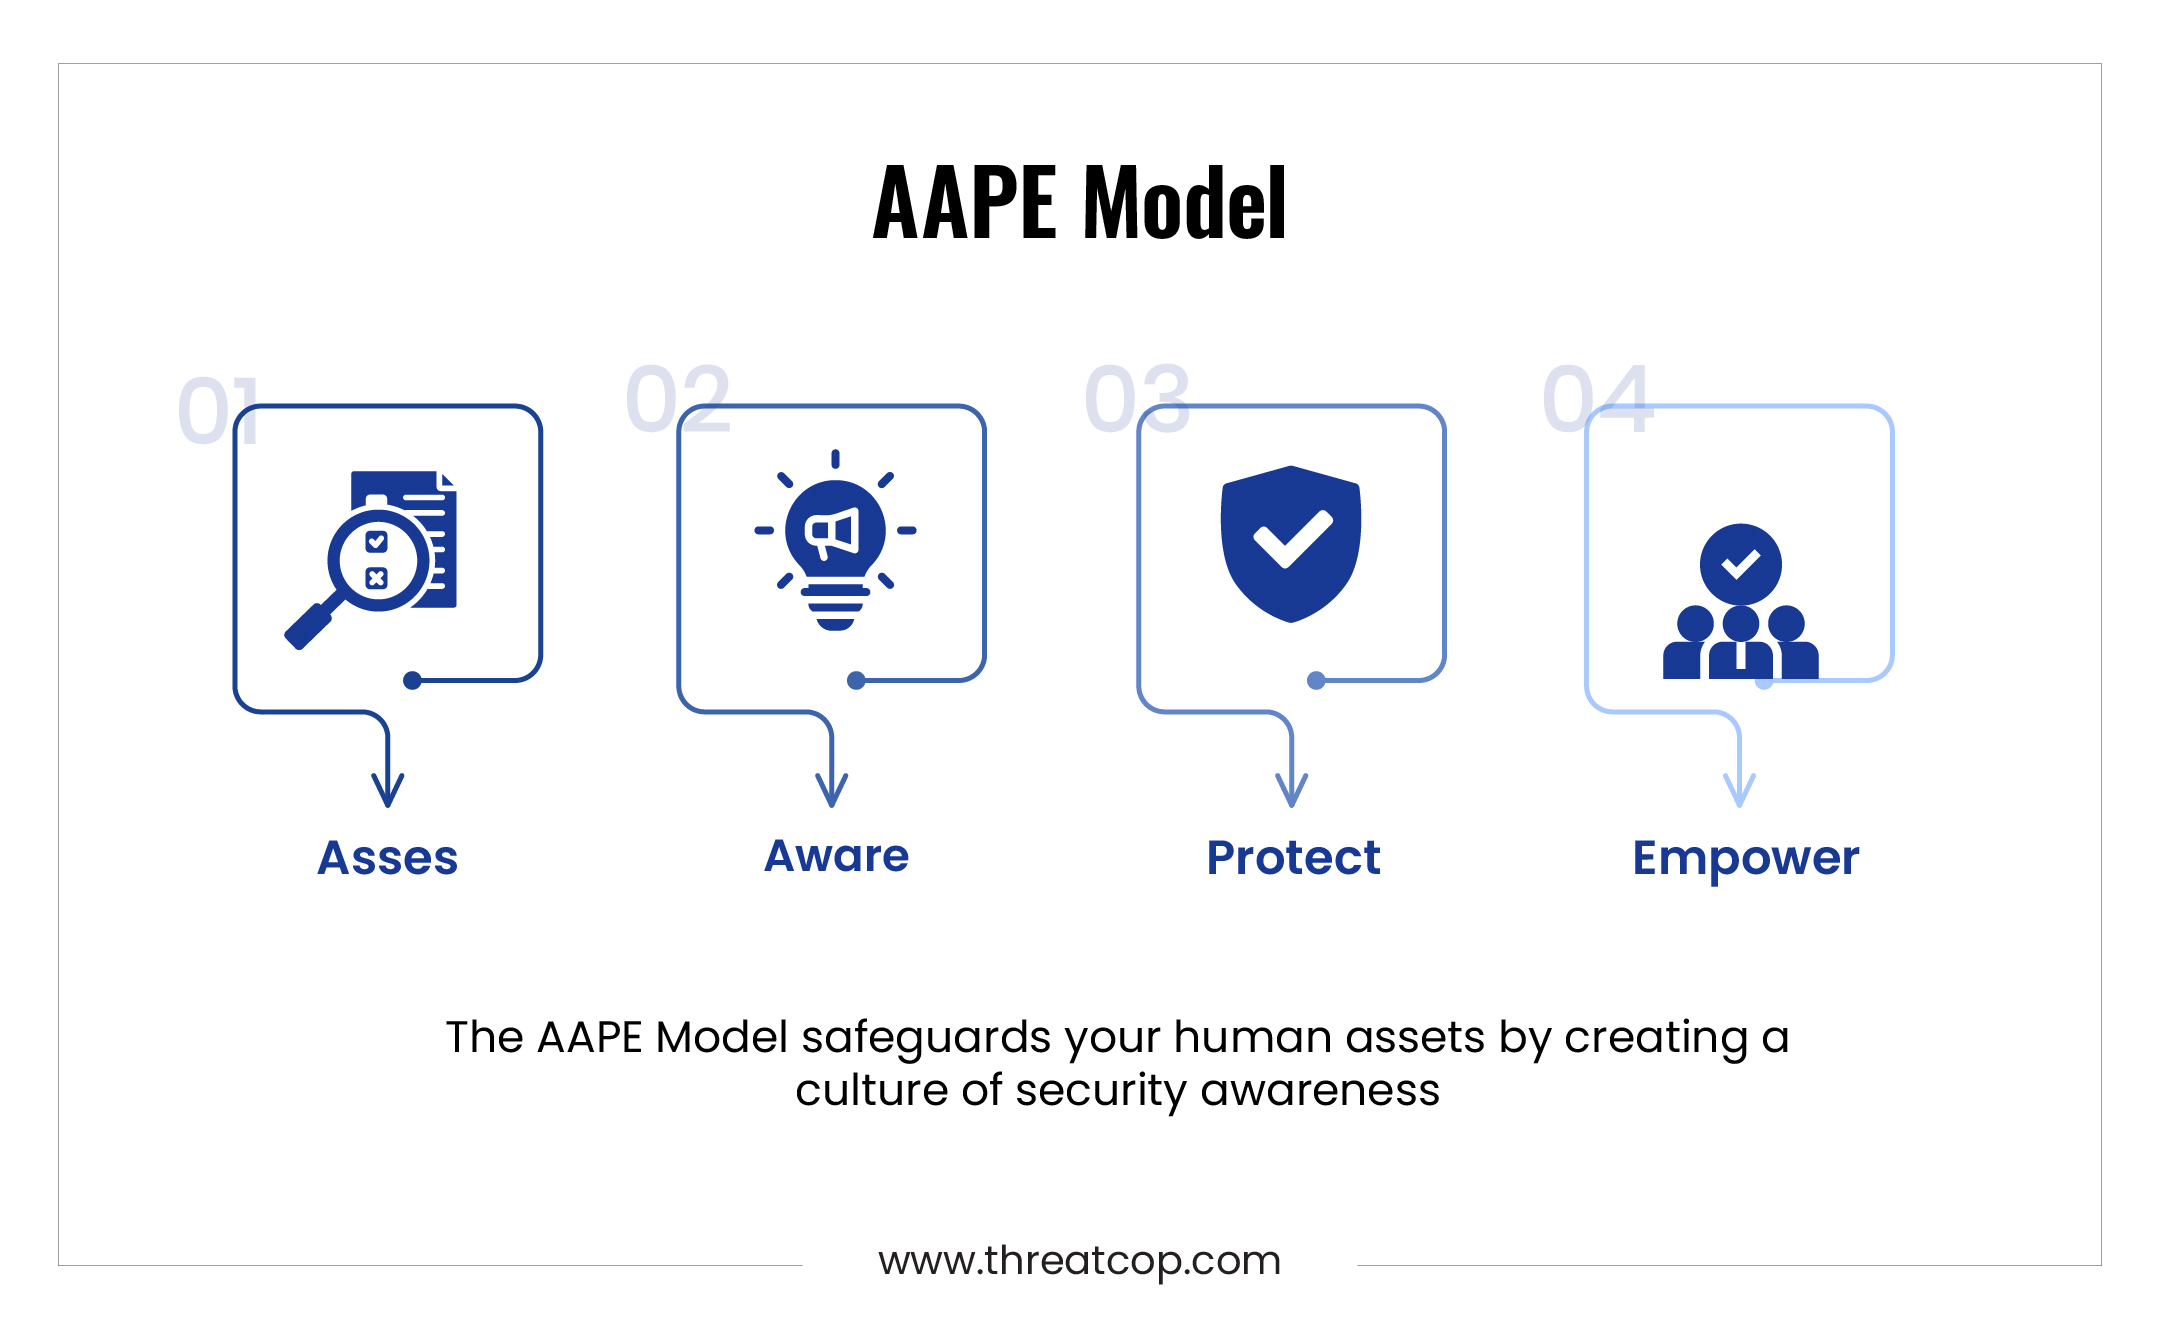 AAPE Model by threatcop